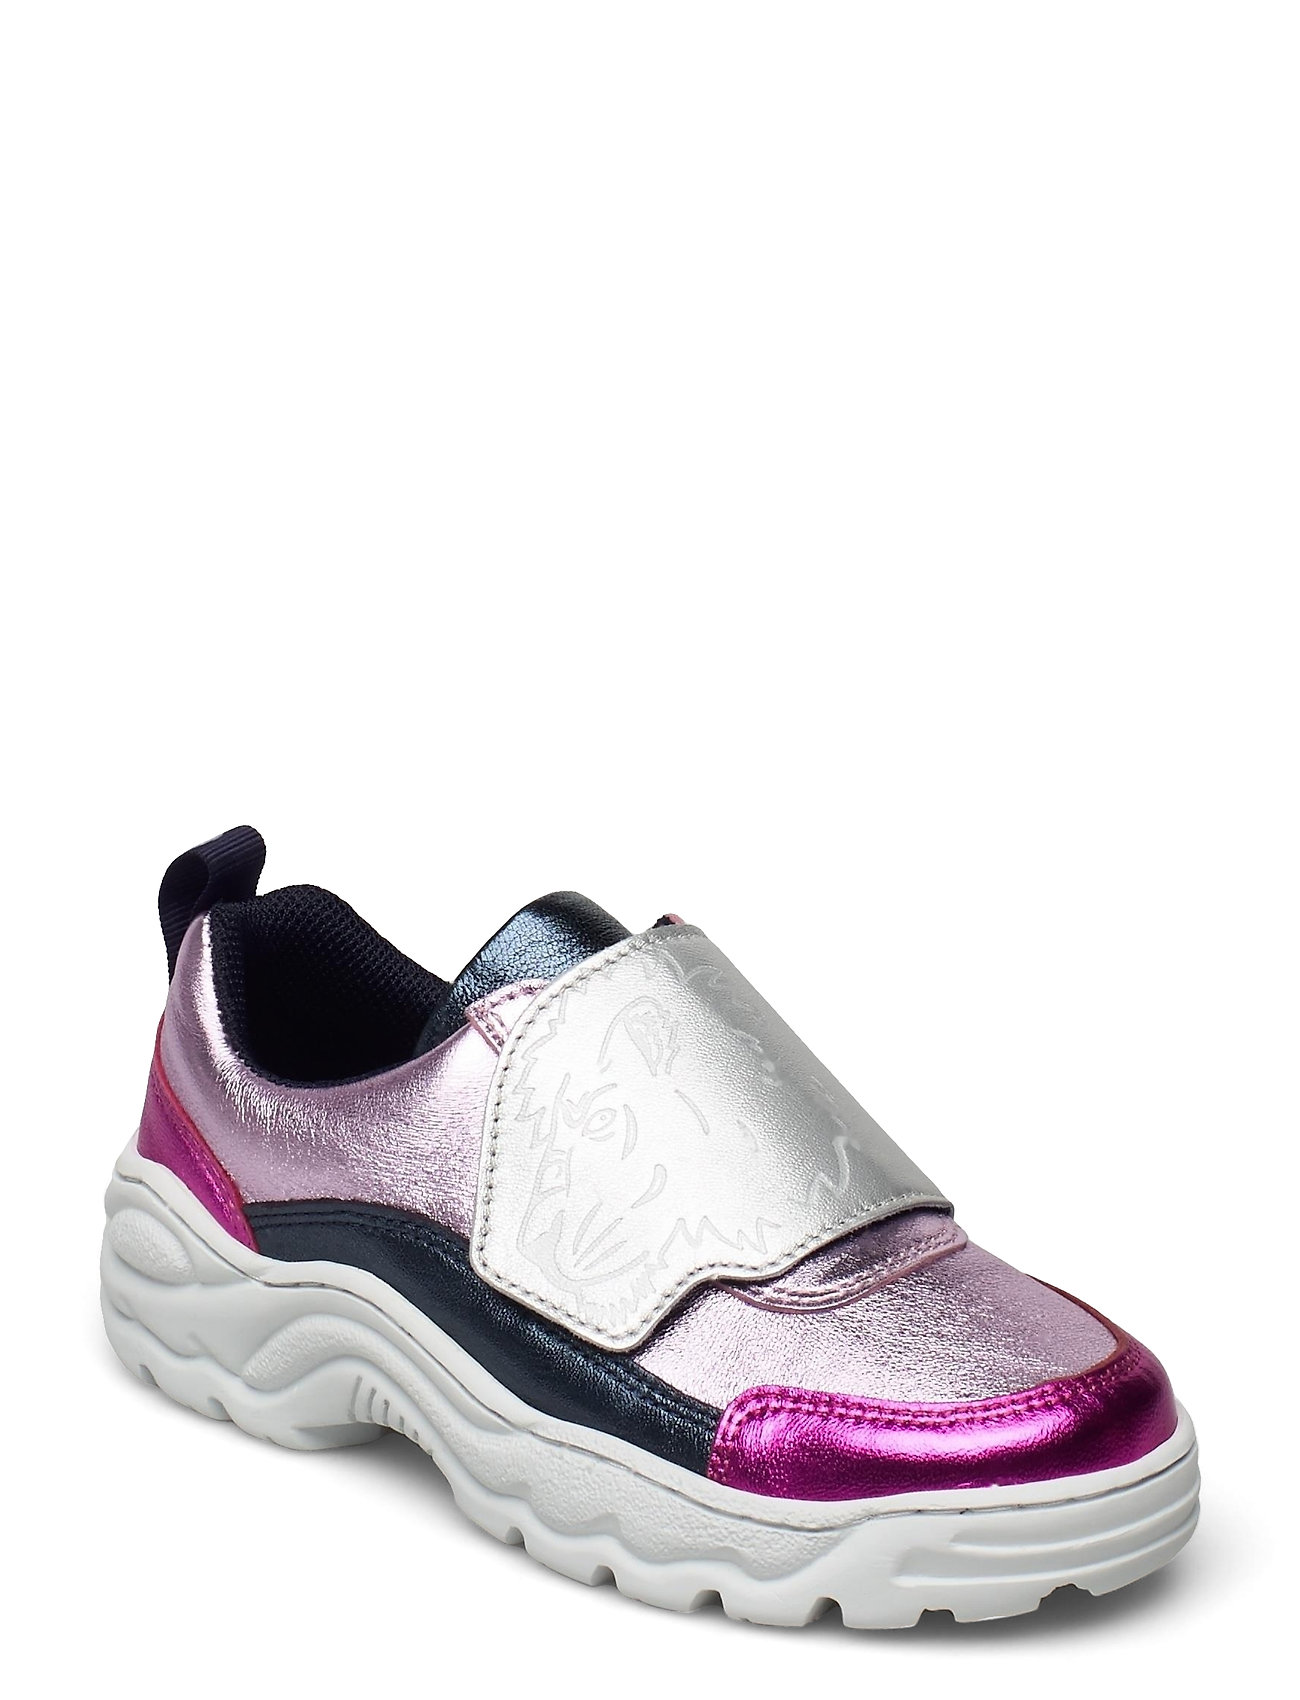 Shoes Matalavartiset Sneakerit Tennarit Vaaleanpunainen Kenzo